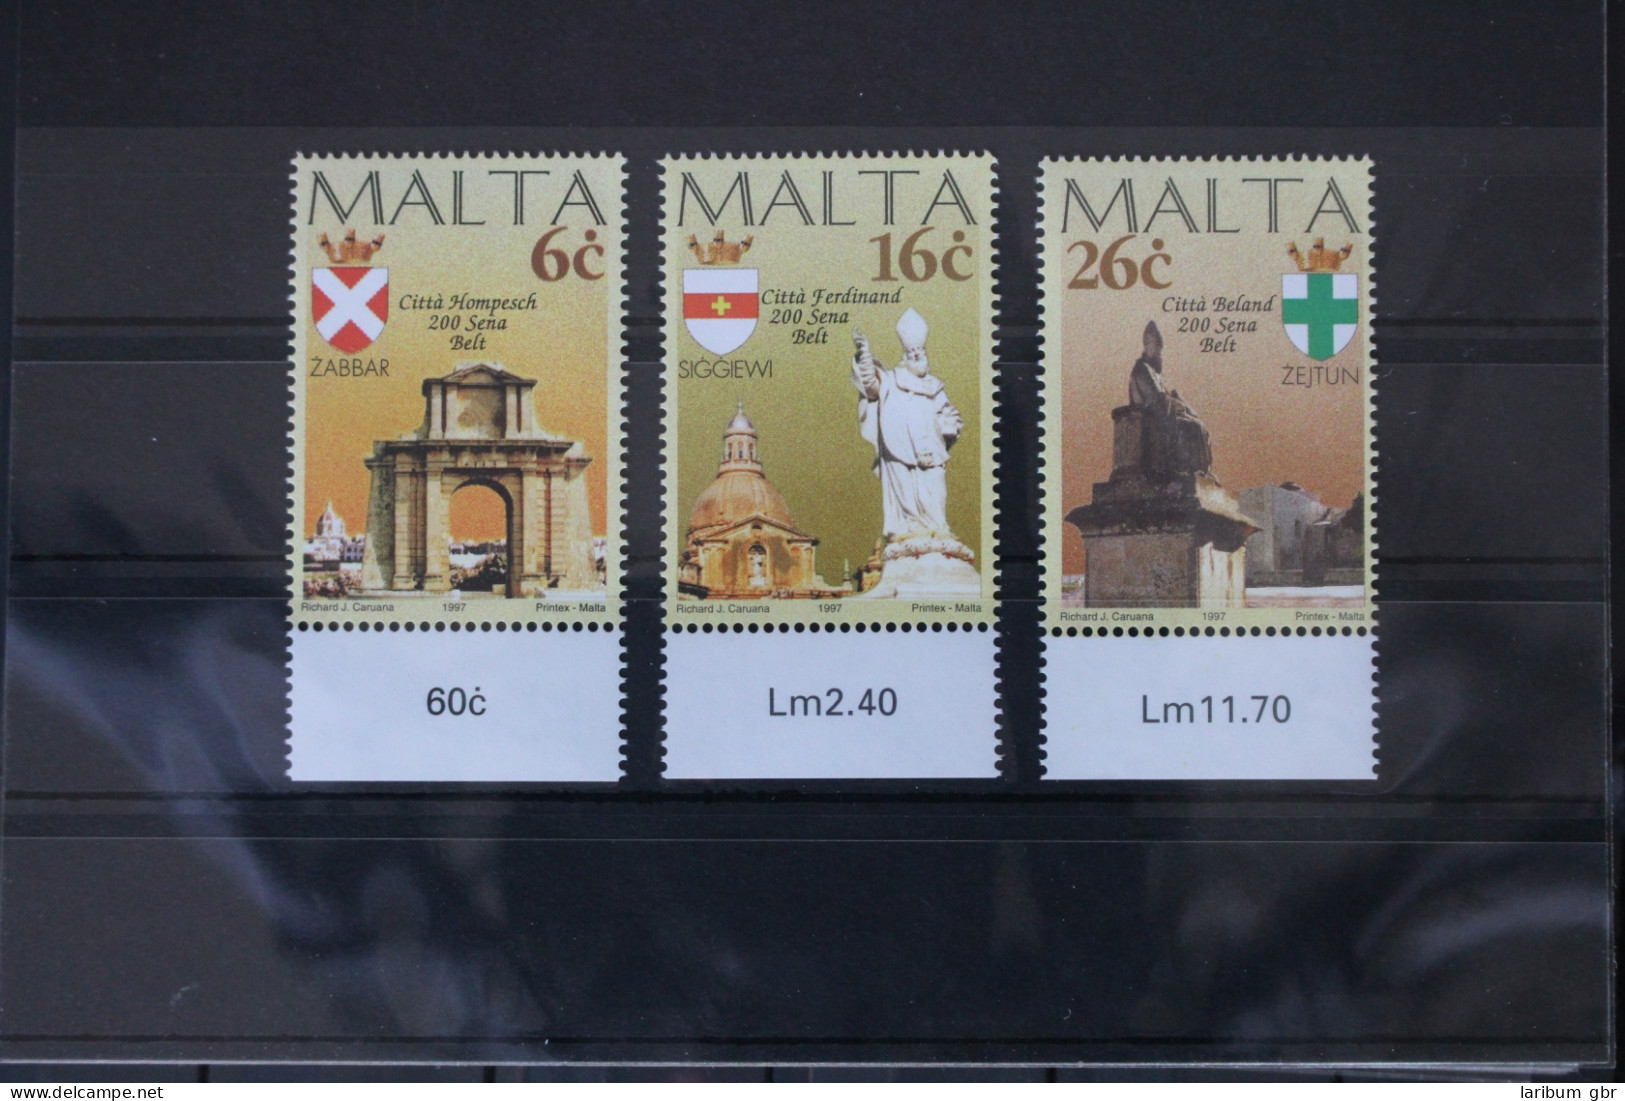 Malta 1005-1007 Postfrisch #VR986 - Malte